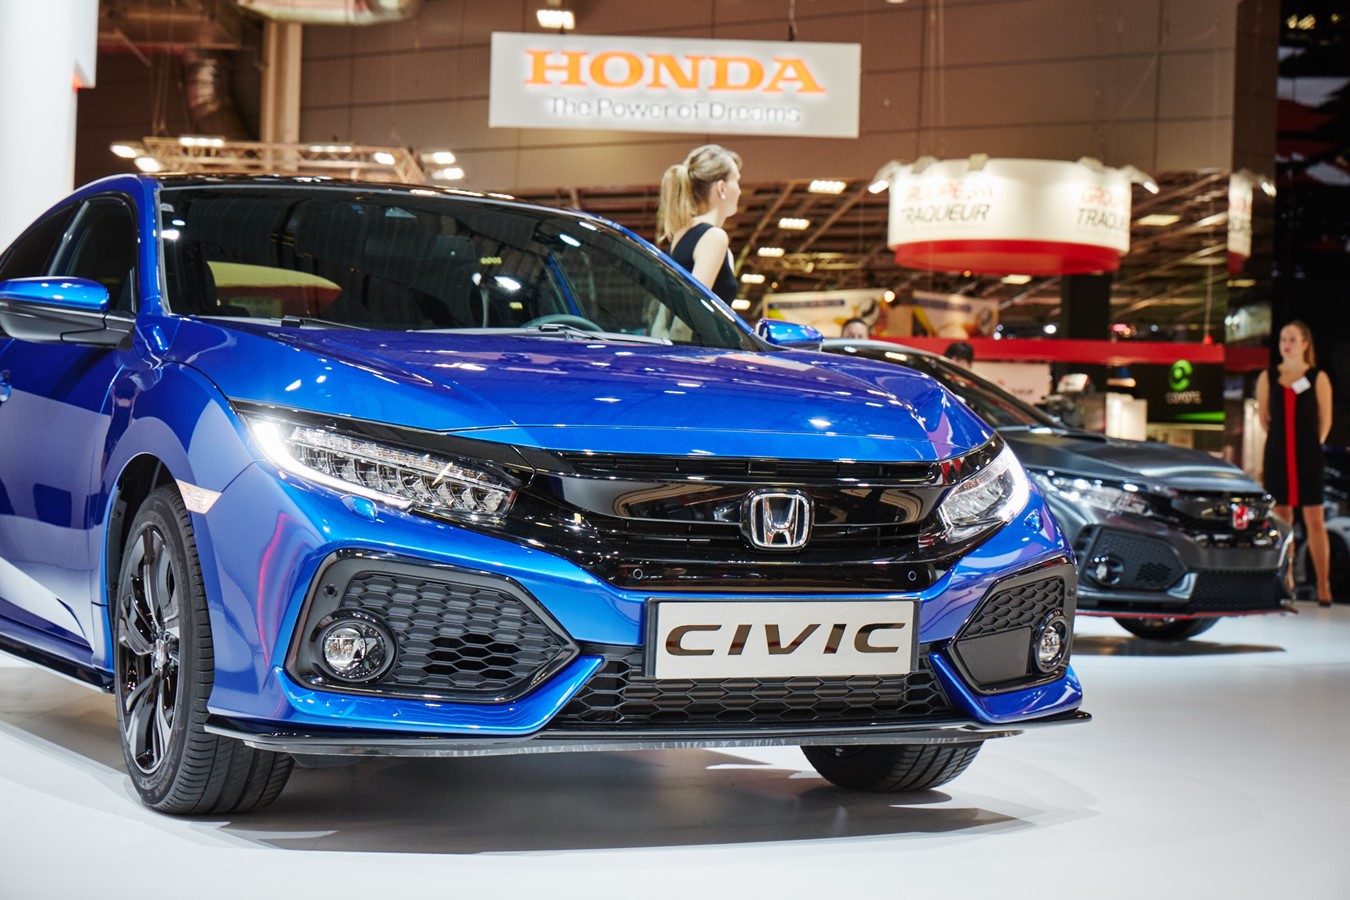 Nästa steg i Hondas tillbakatåg: Civic halvkombi och prototypen av Type R intar scenen i Paris